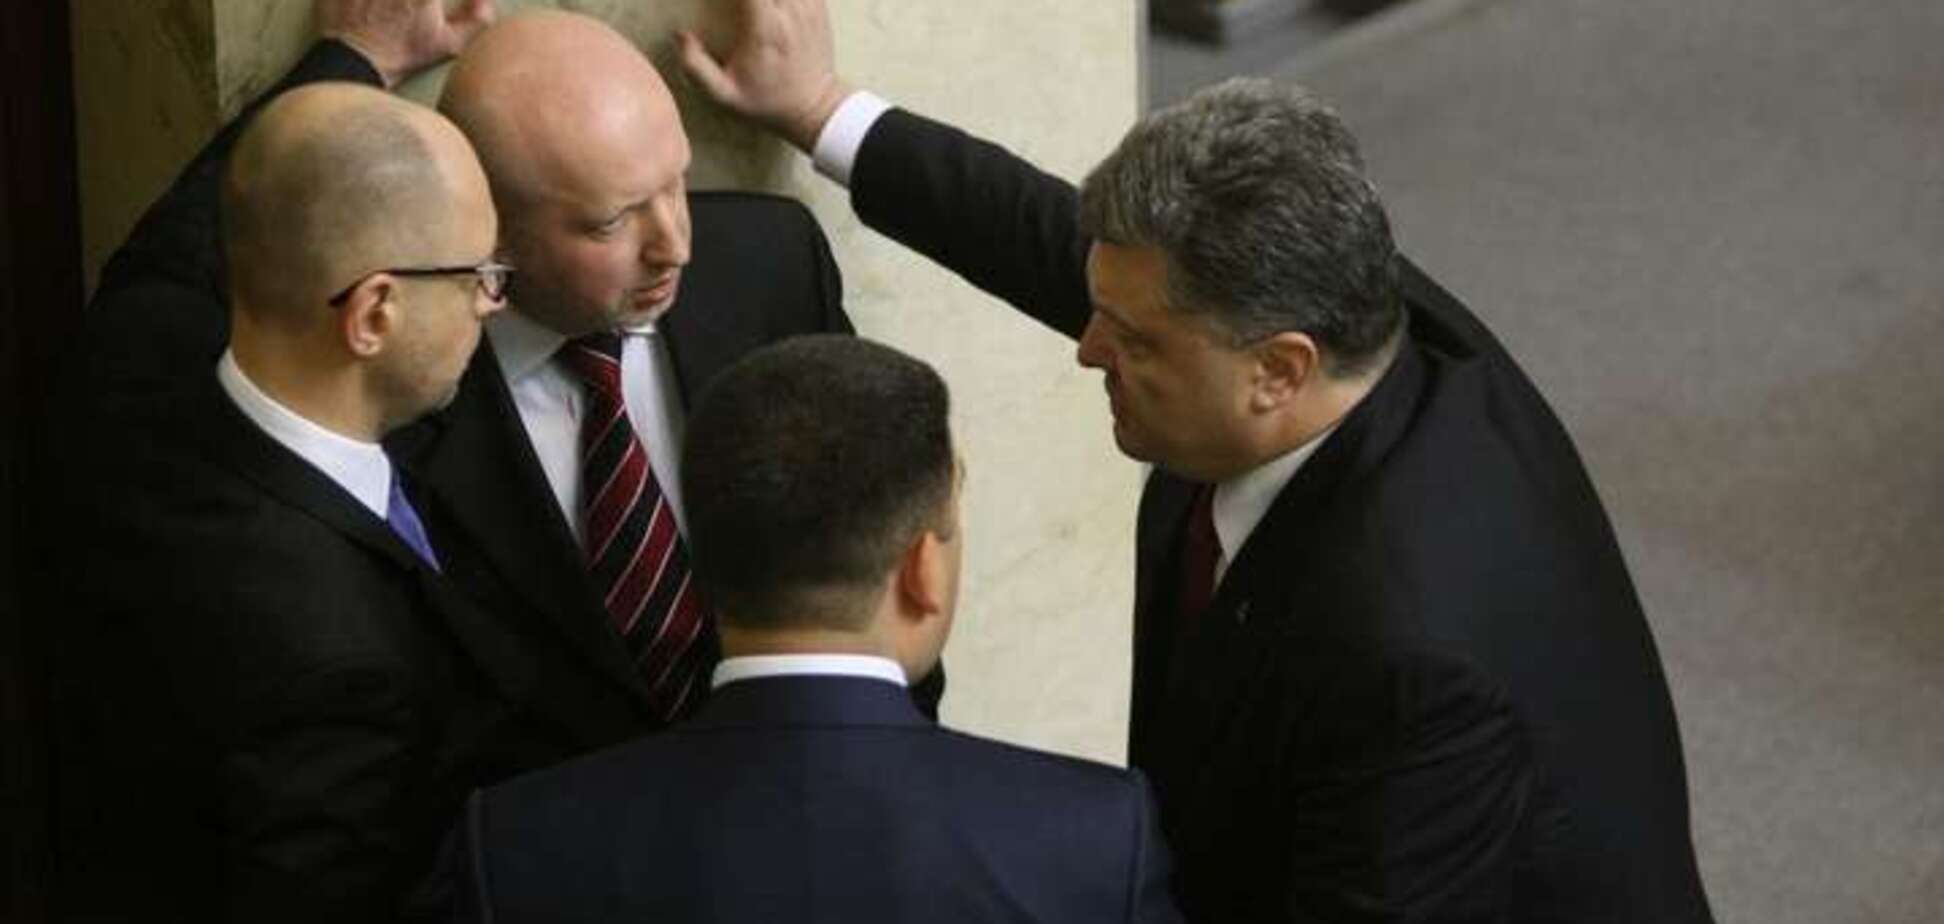 Яценюк возглавит НБУ? СМИ сообщили детали тайных переговоров у Порошенко